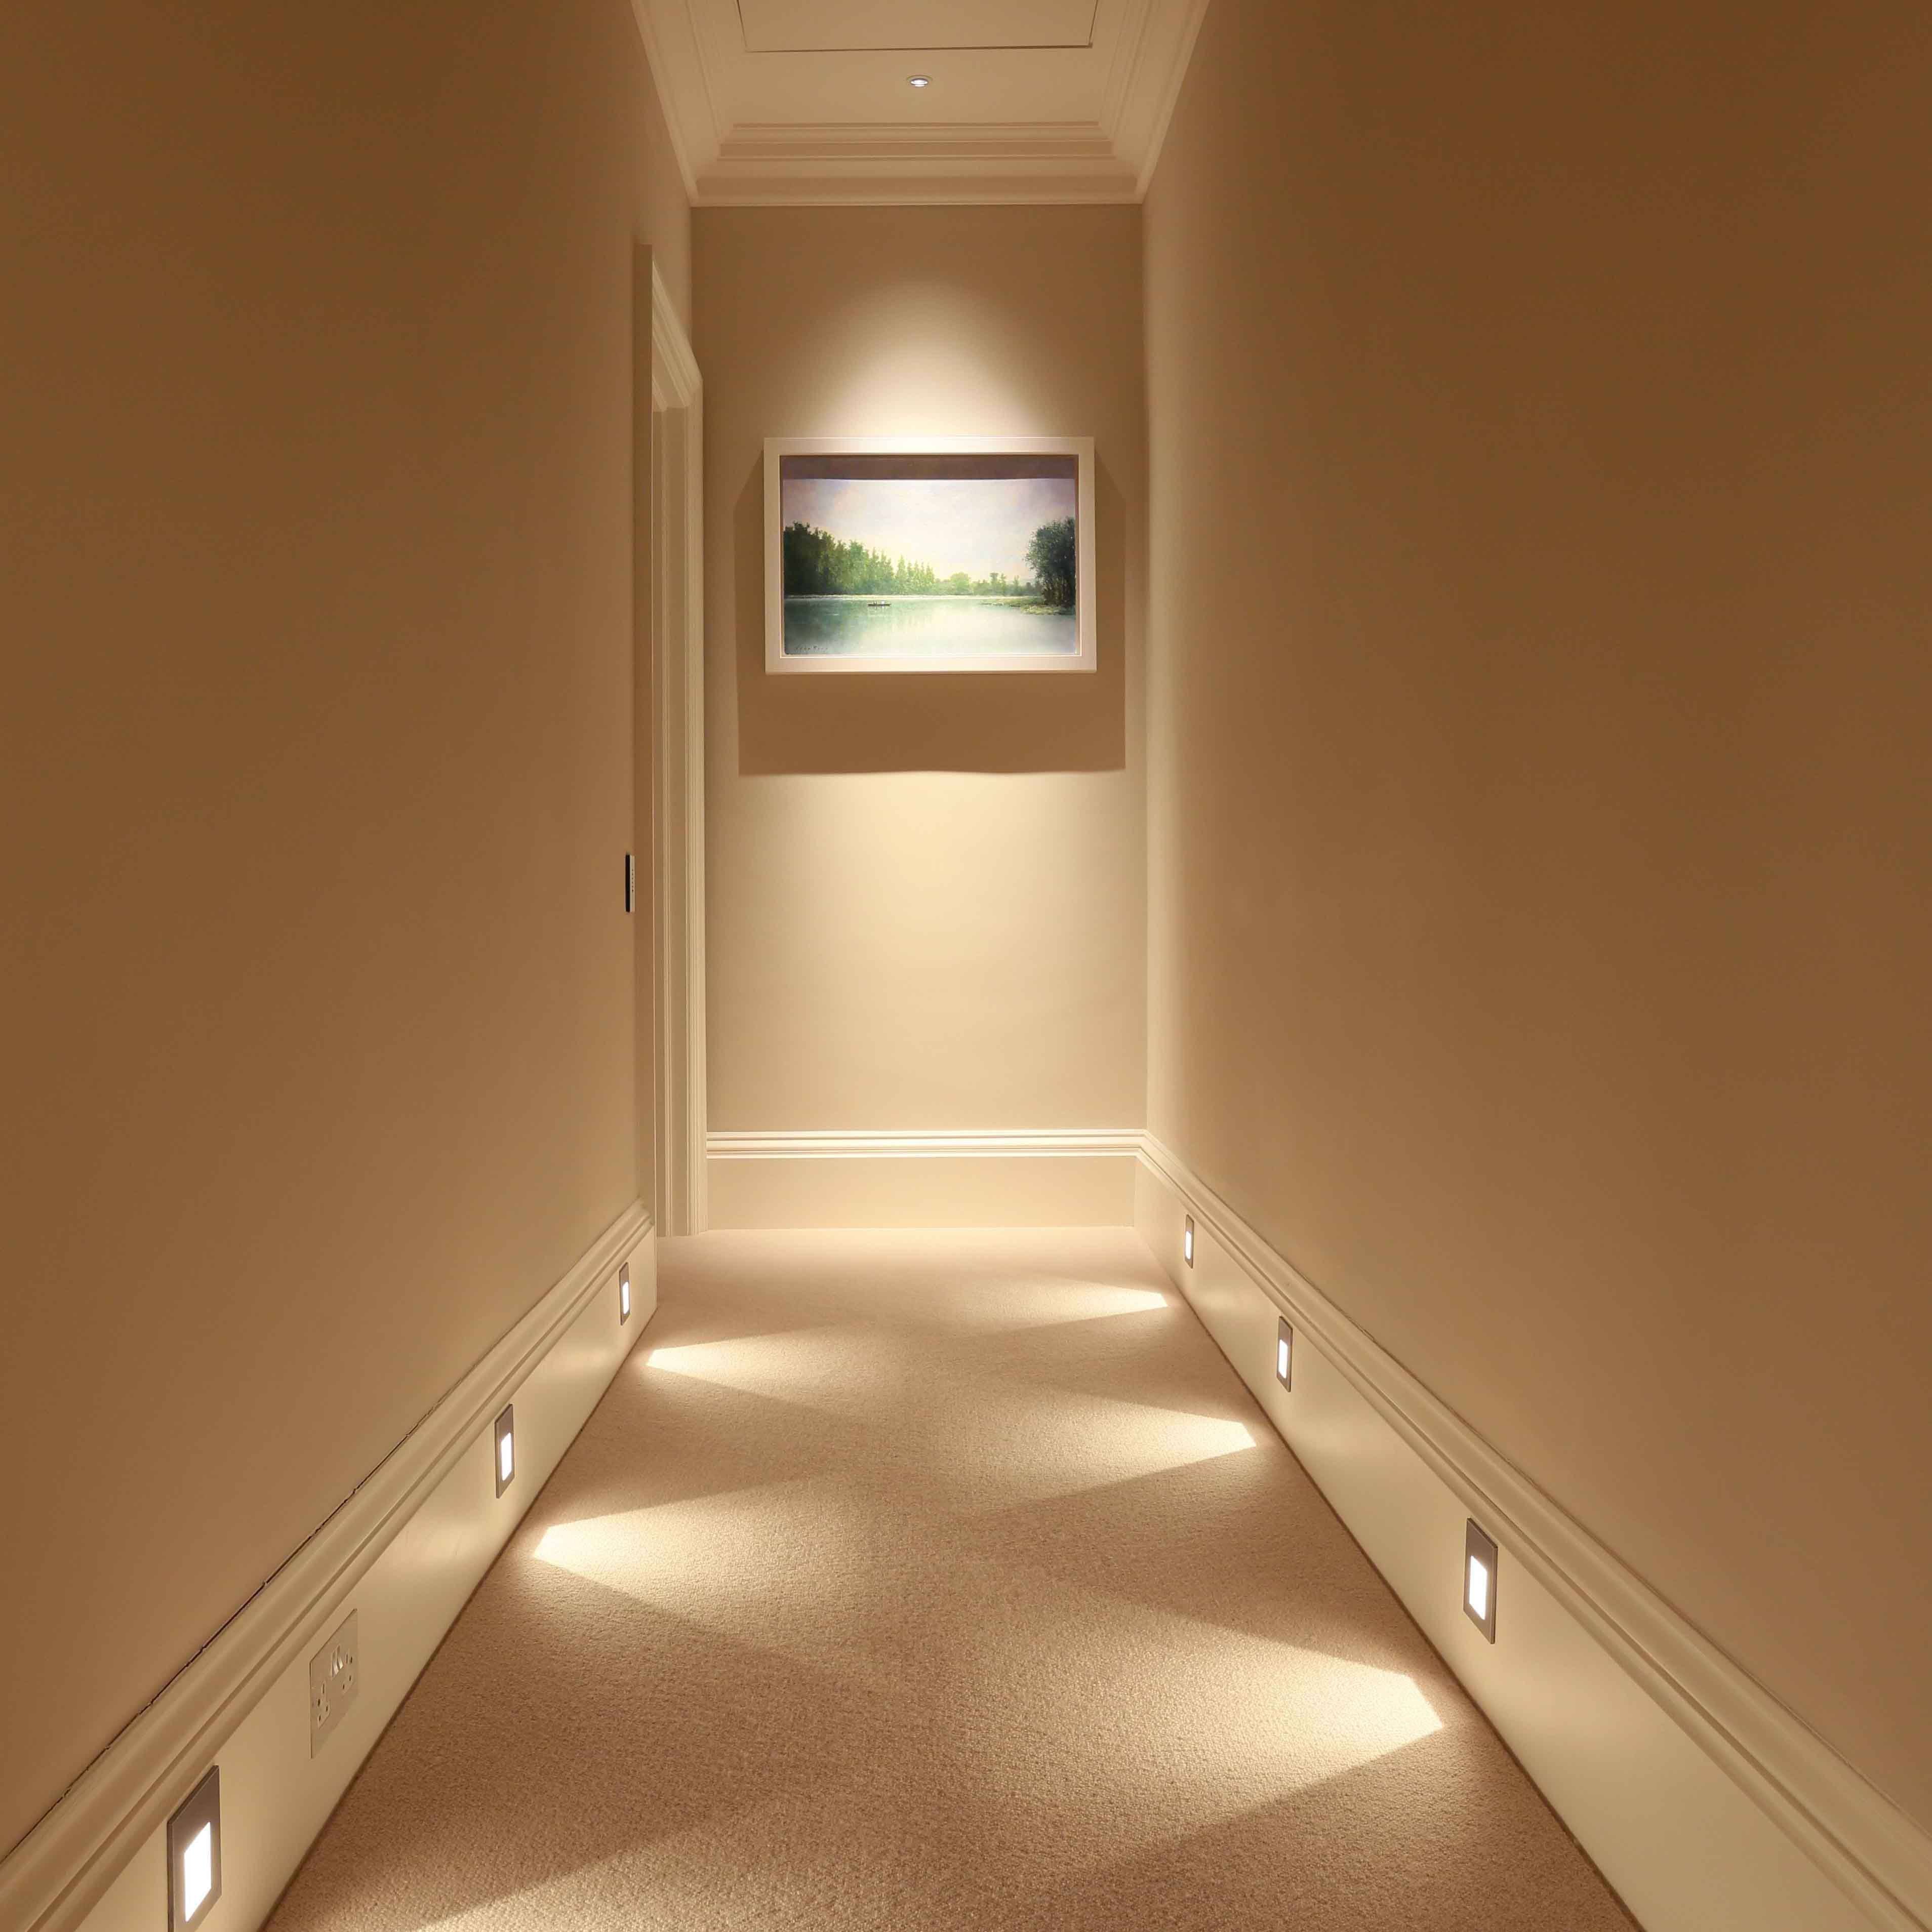 Освещенного снизу. Освещение в коридоре. Подсветка в коридоре. Светодиодная подсветка в коридоре. Ночное освещение в коридоре.